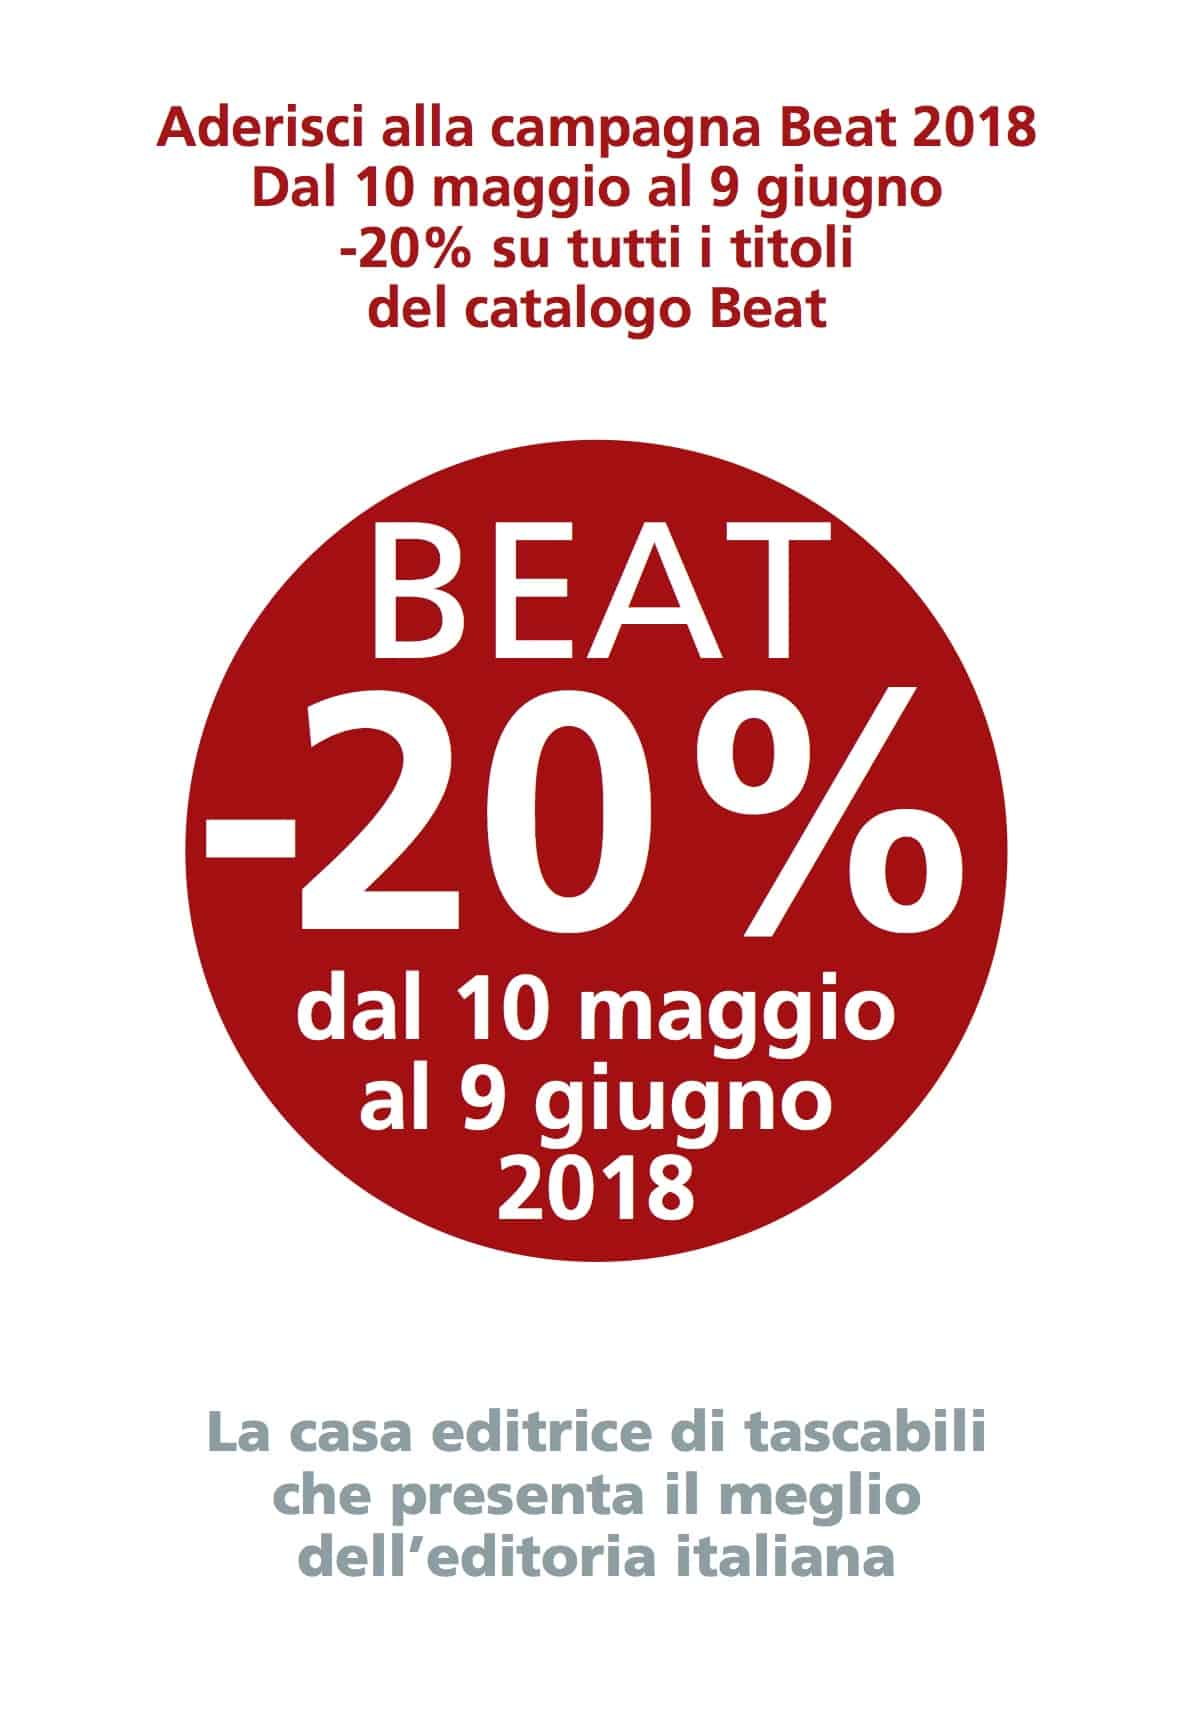 Aderisci alla campagna Beat 2018 Dal 10 maggio al 9 giugno -20% su tutti i titoli del catalogo Beat